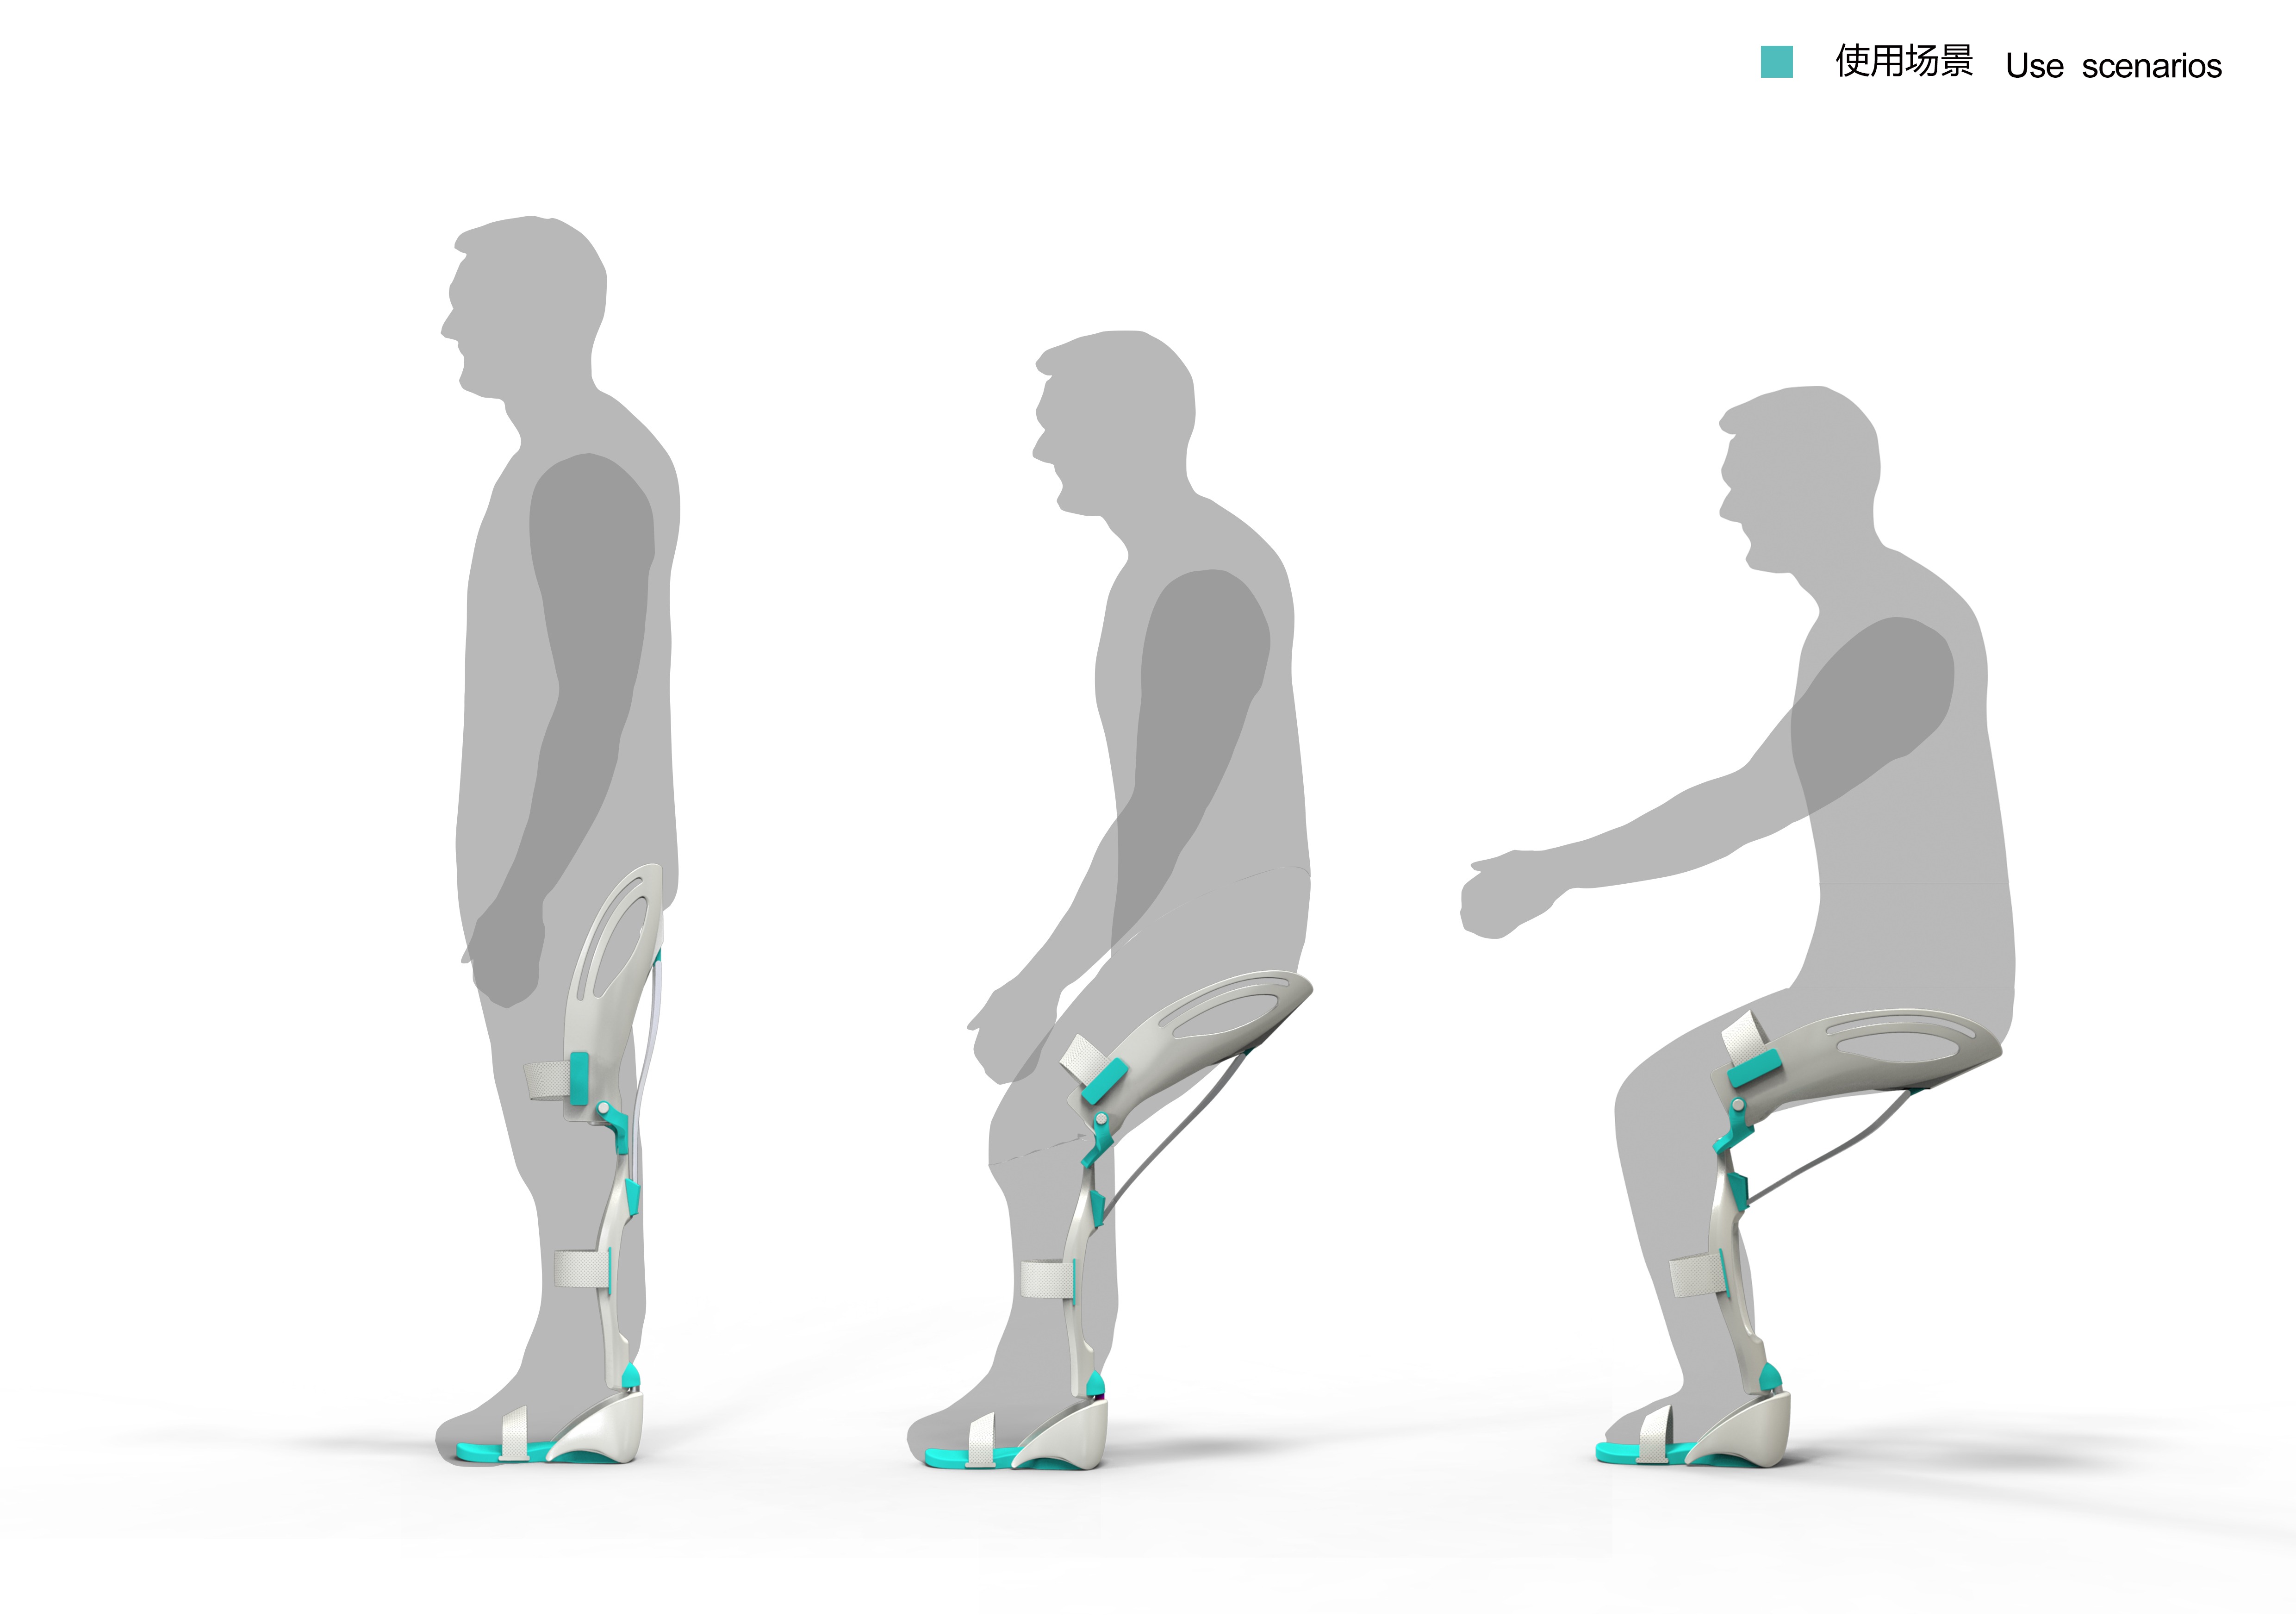 可让你坐得更舒服~axyl椅子设计~ - 普象网